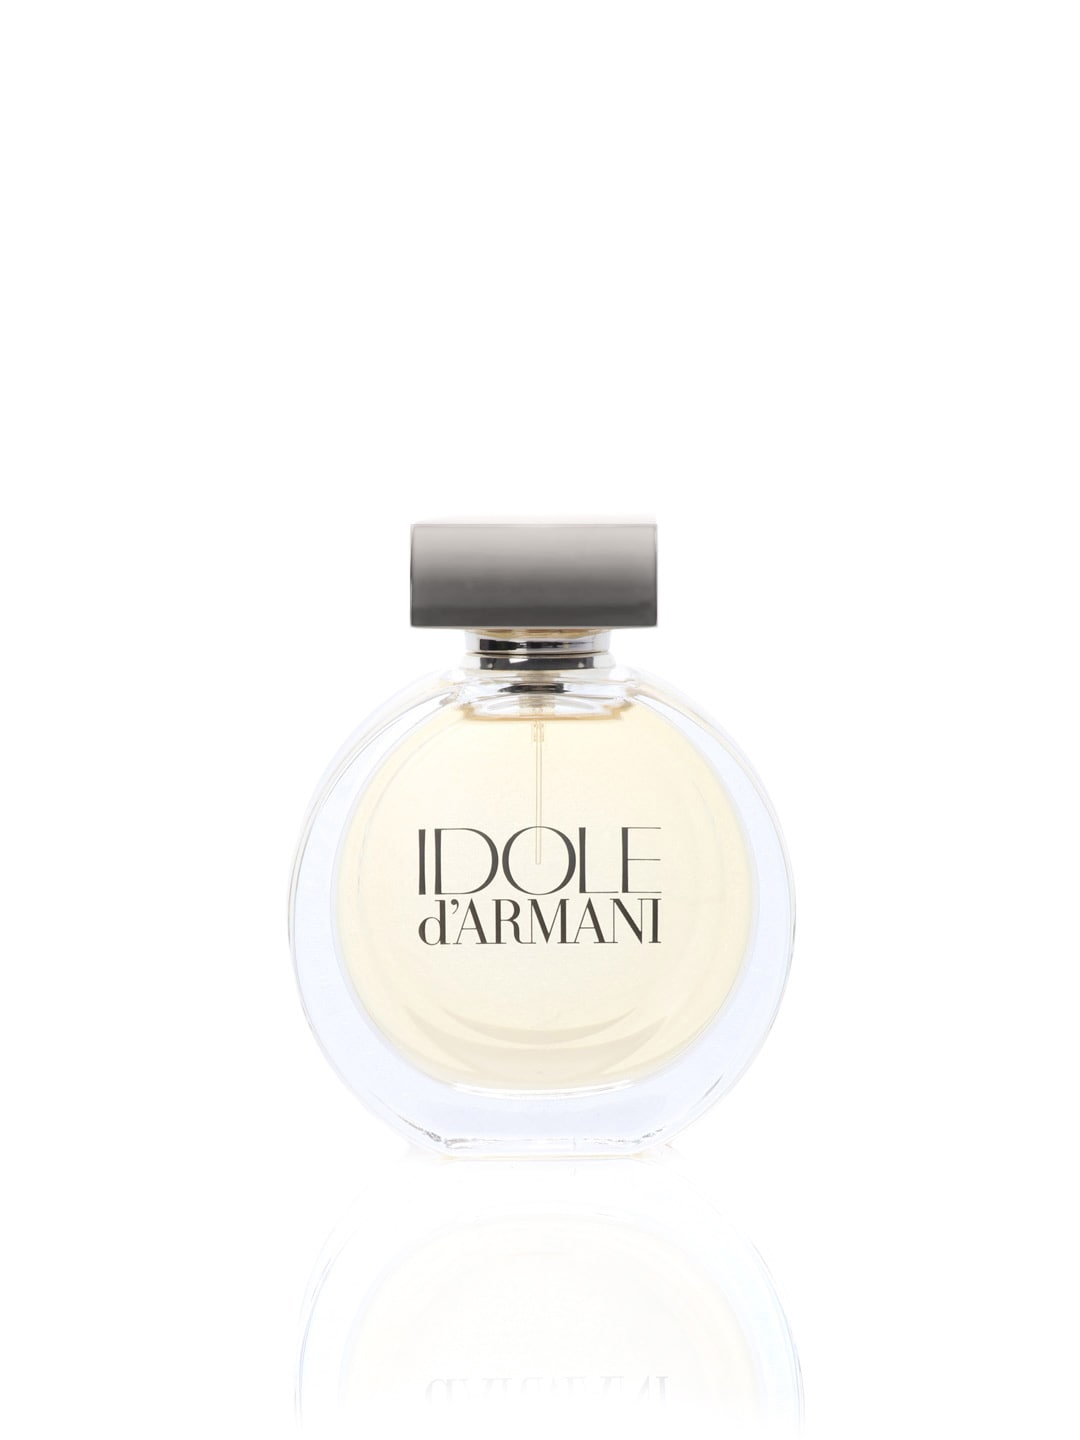 Giorgio Armani Women Idole Perfume